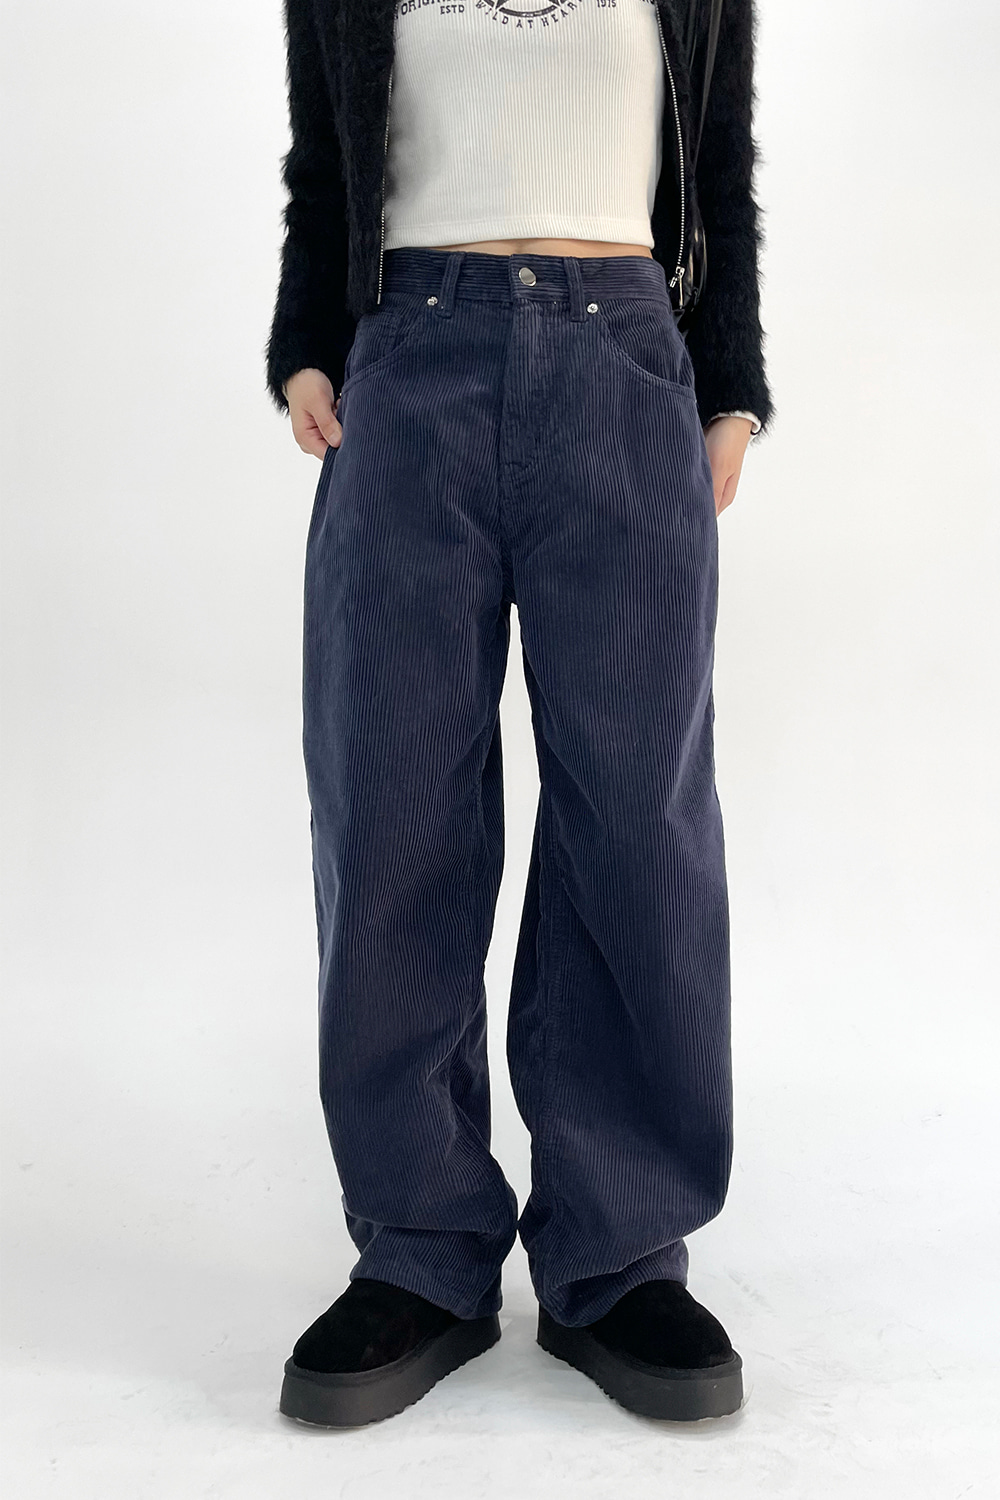 soft wide corduroy pants (4colors)